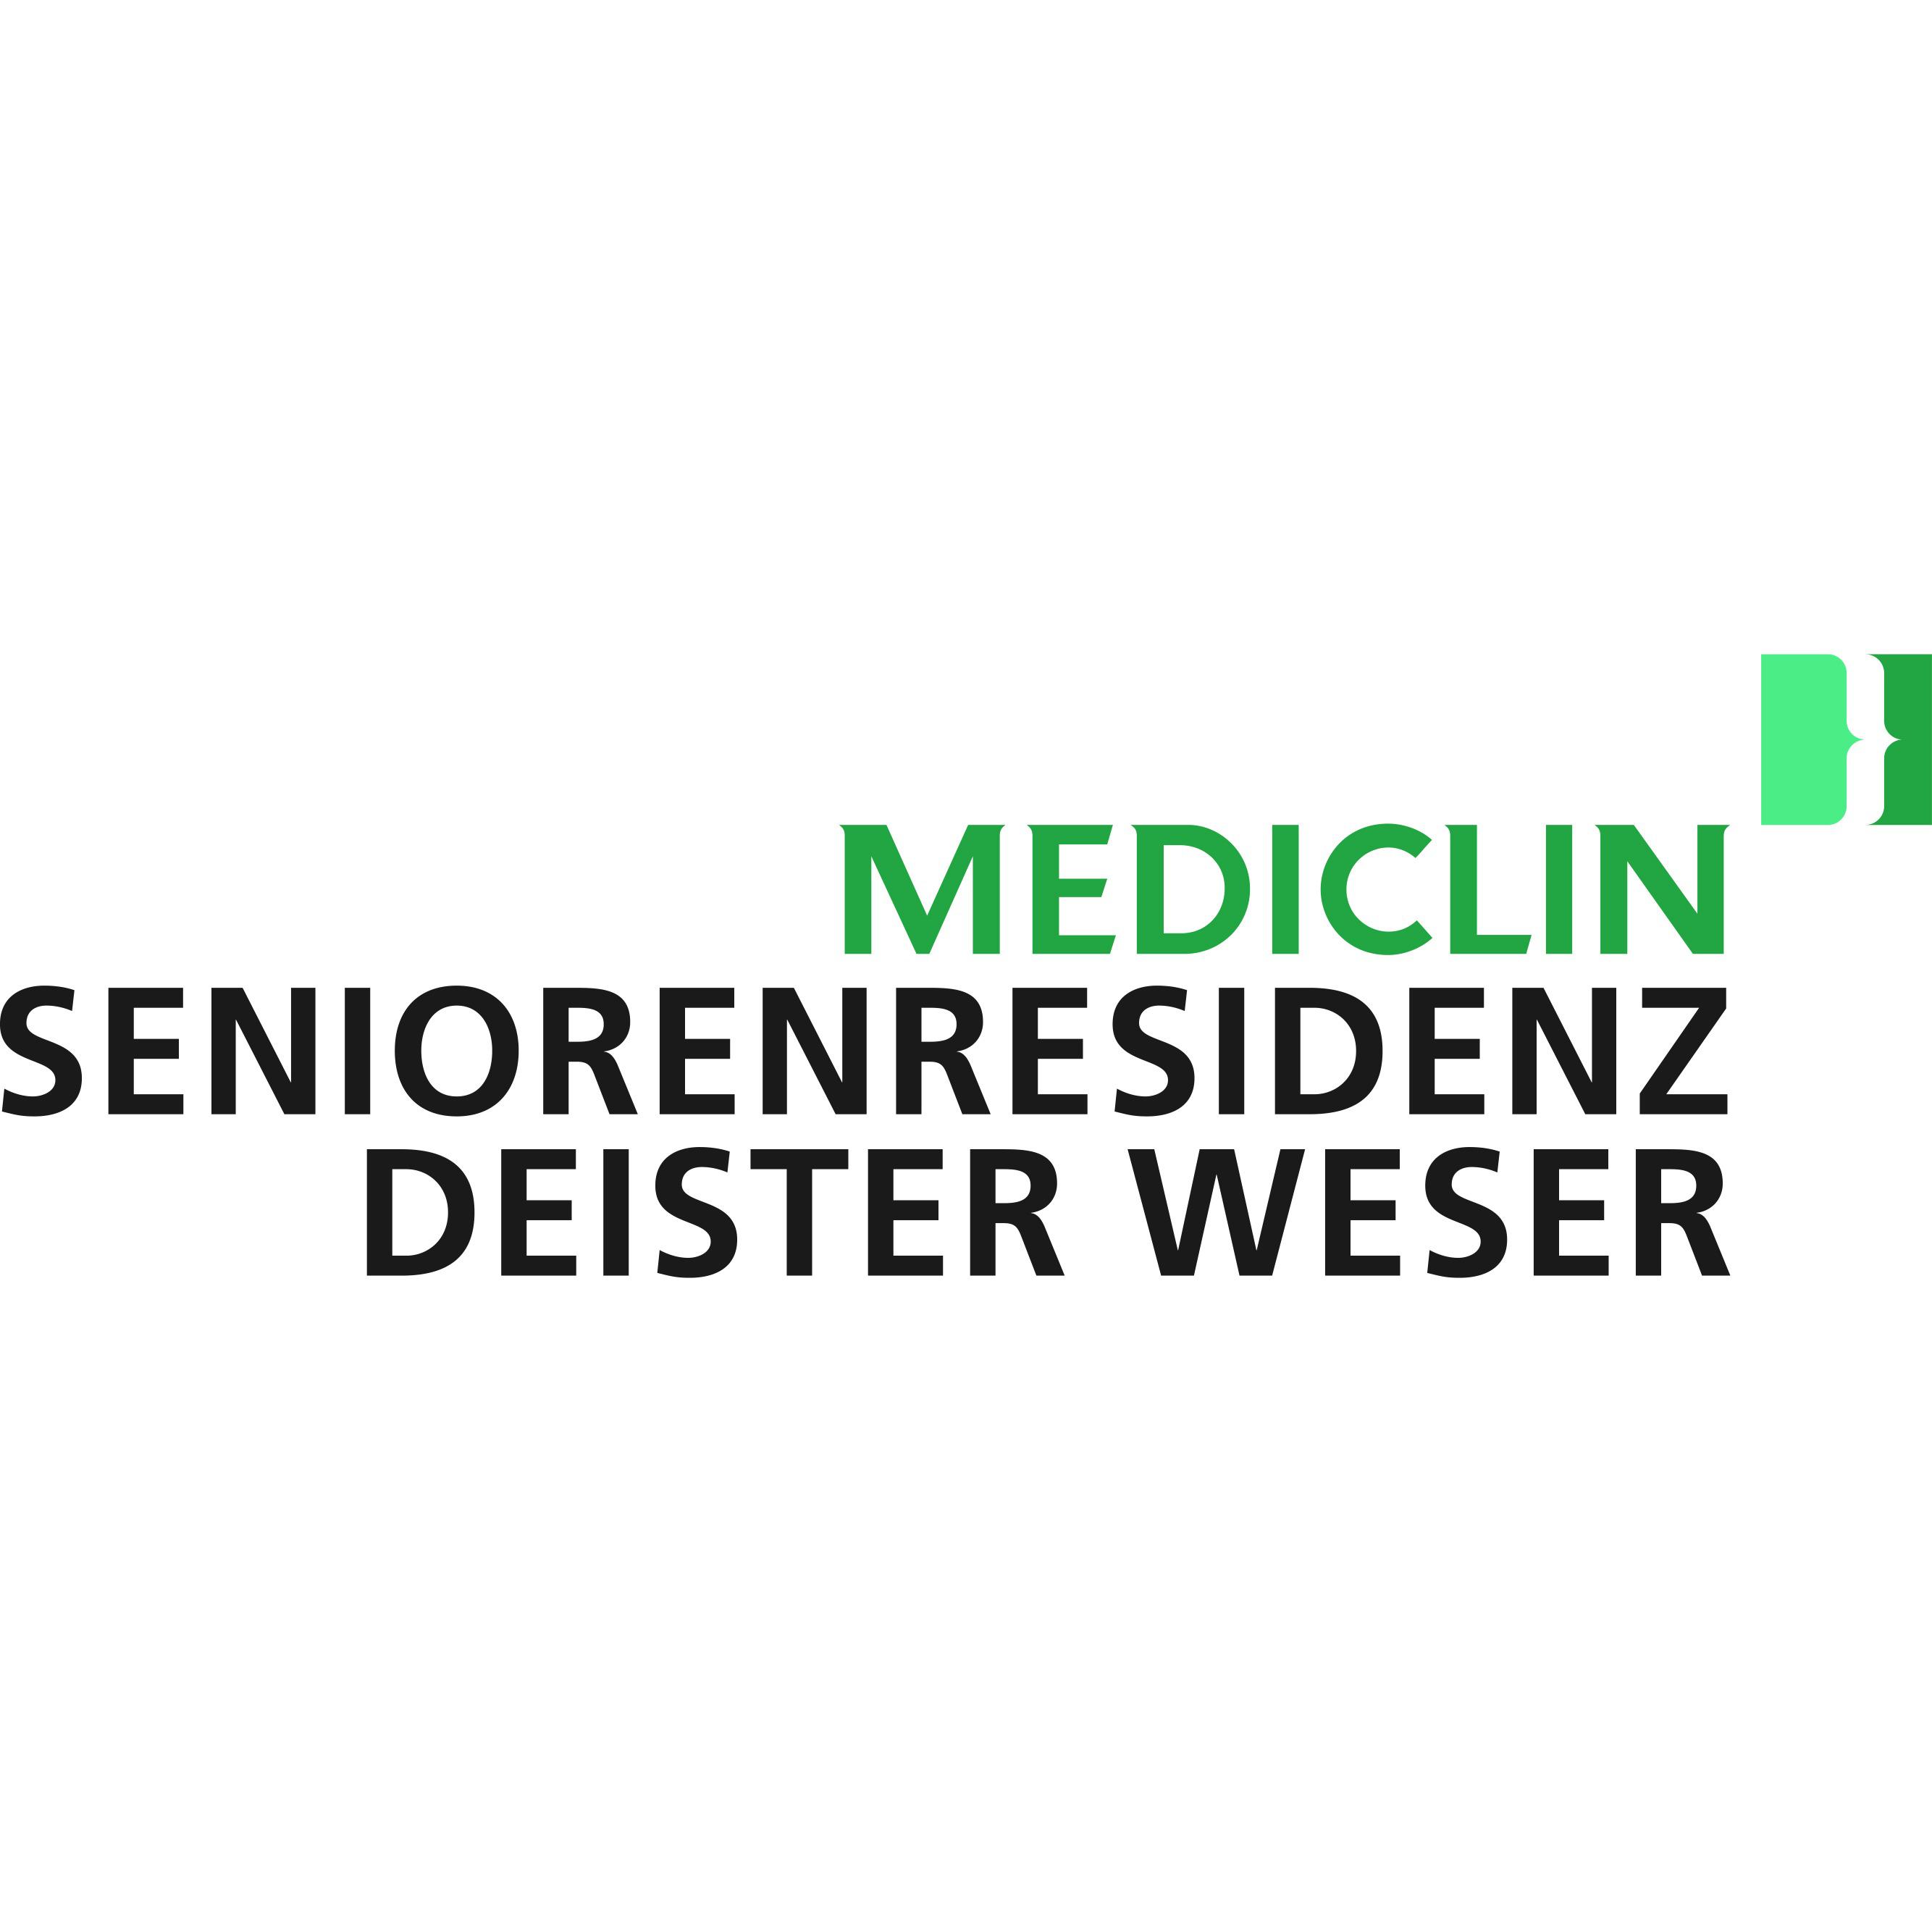 MEDICLIN Seniorenresidenz Deister Weser in Bad Münder am Deister - Logo